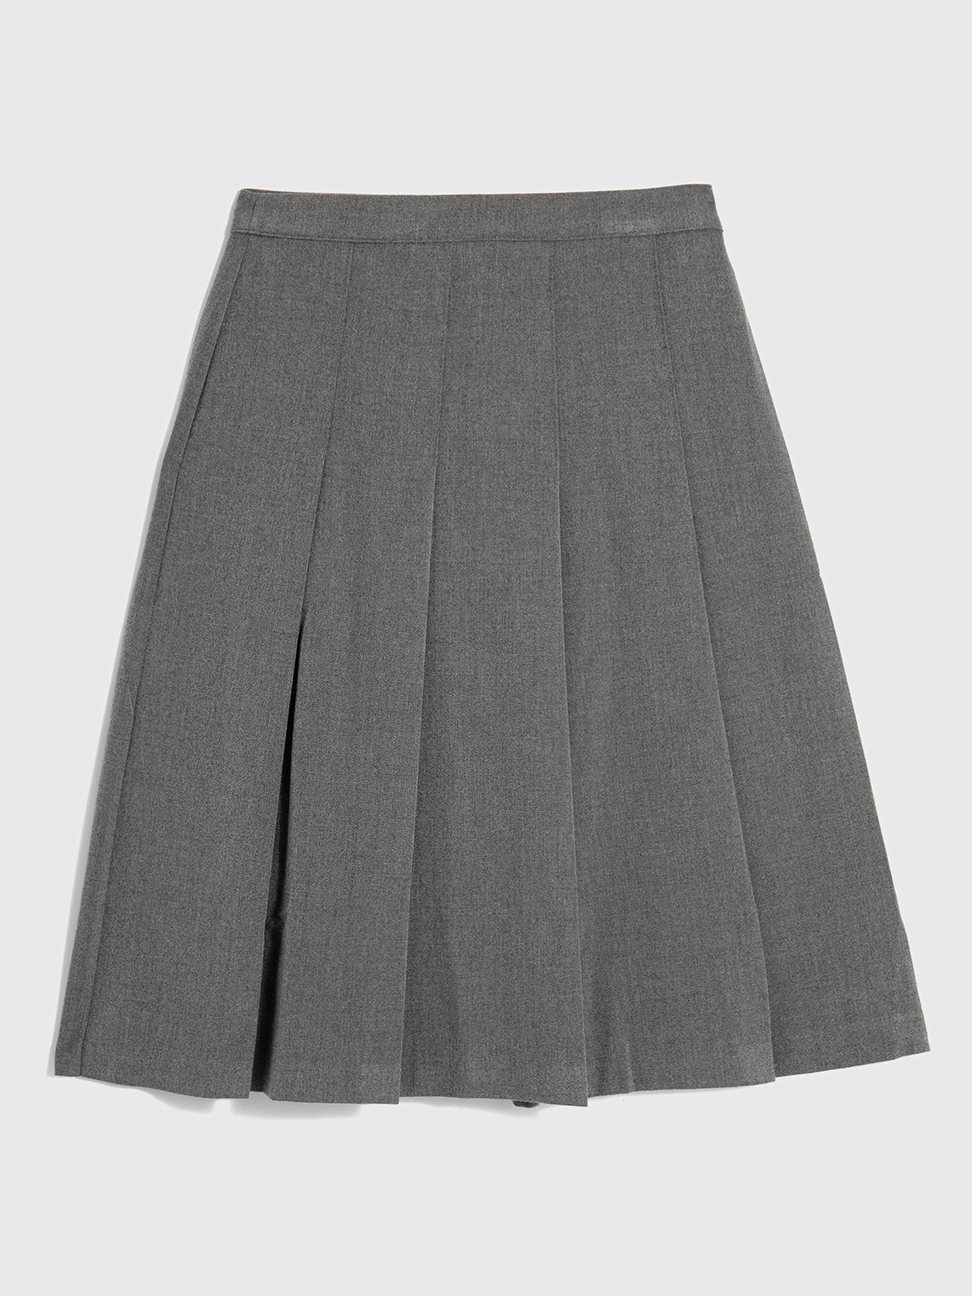 Gap女裝高腰百褶中長裙(灰色)，2299元。圖/GAP提供